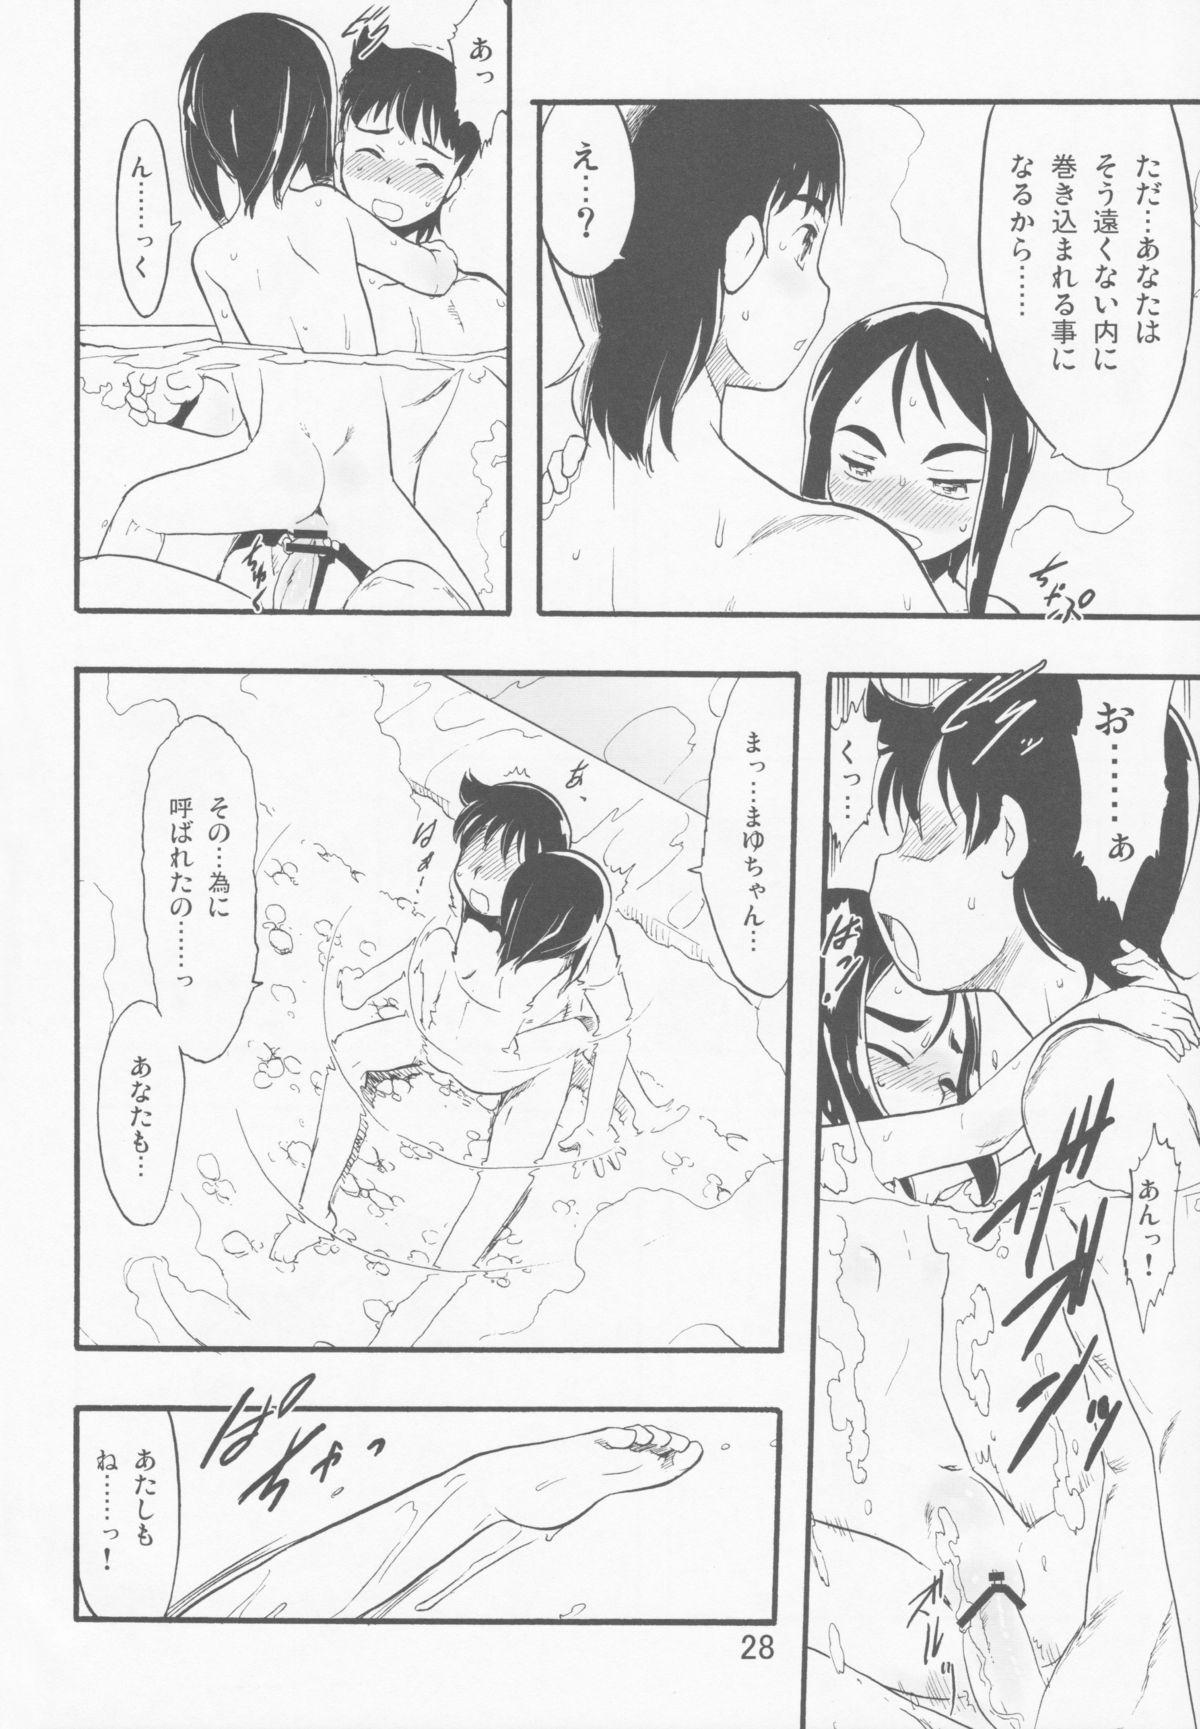 Dorm Nushi no Sumu Yama Vol. 11 High - Page 28